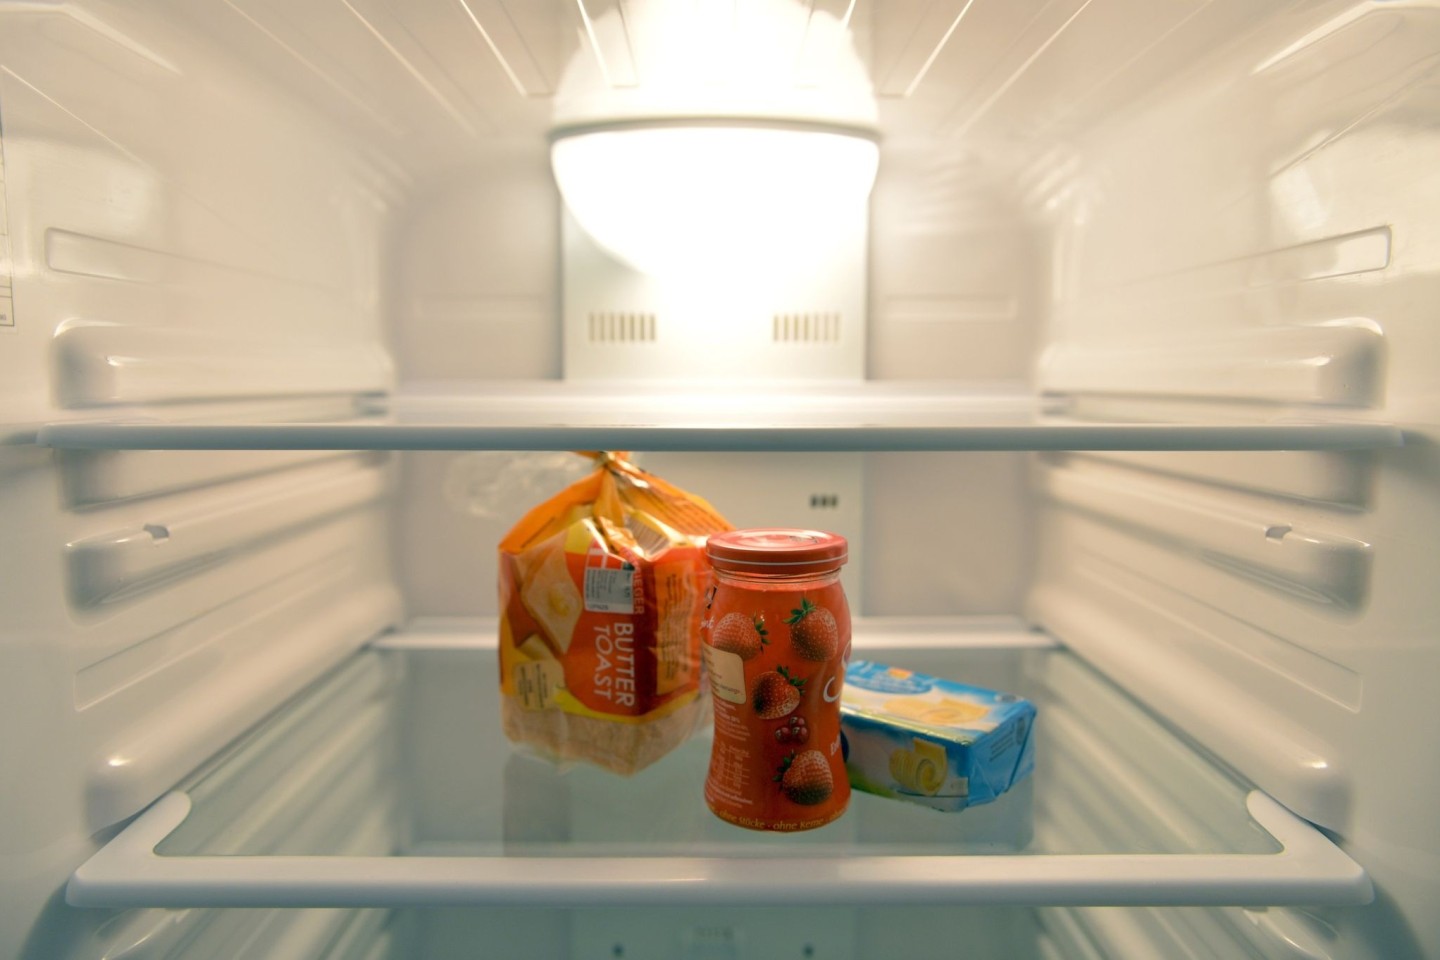 Konfitüre, Toastbrot und Butter stehen in einem Kühlschrank eines Einpersonenhaushalts.